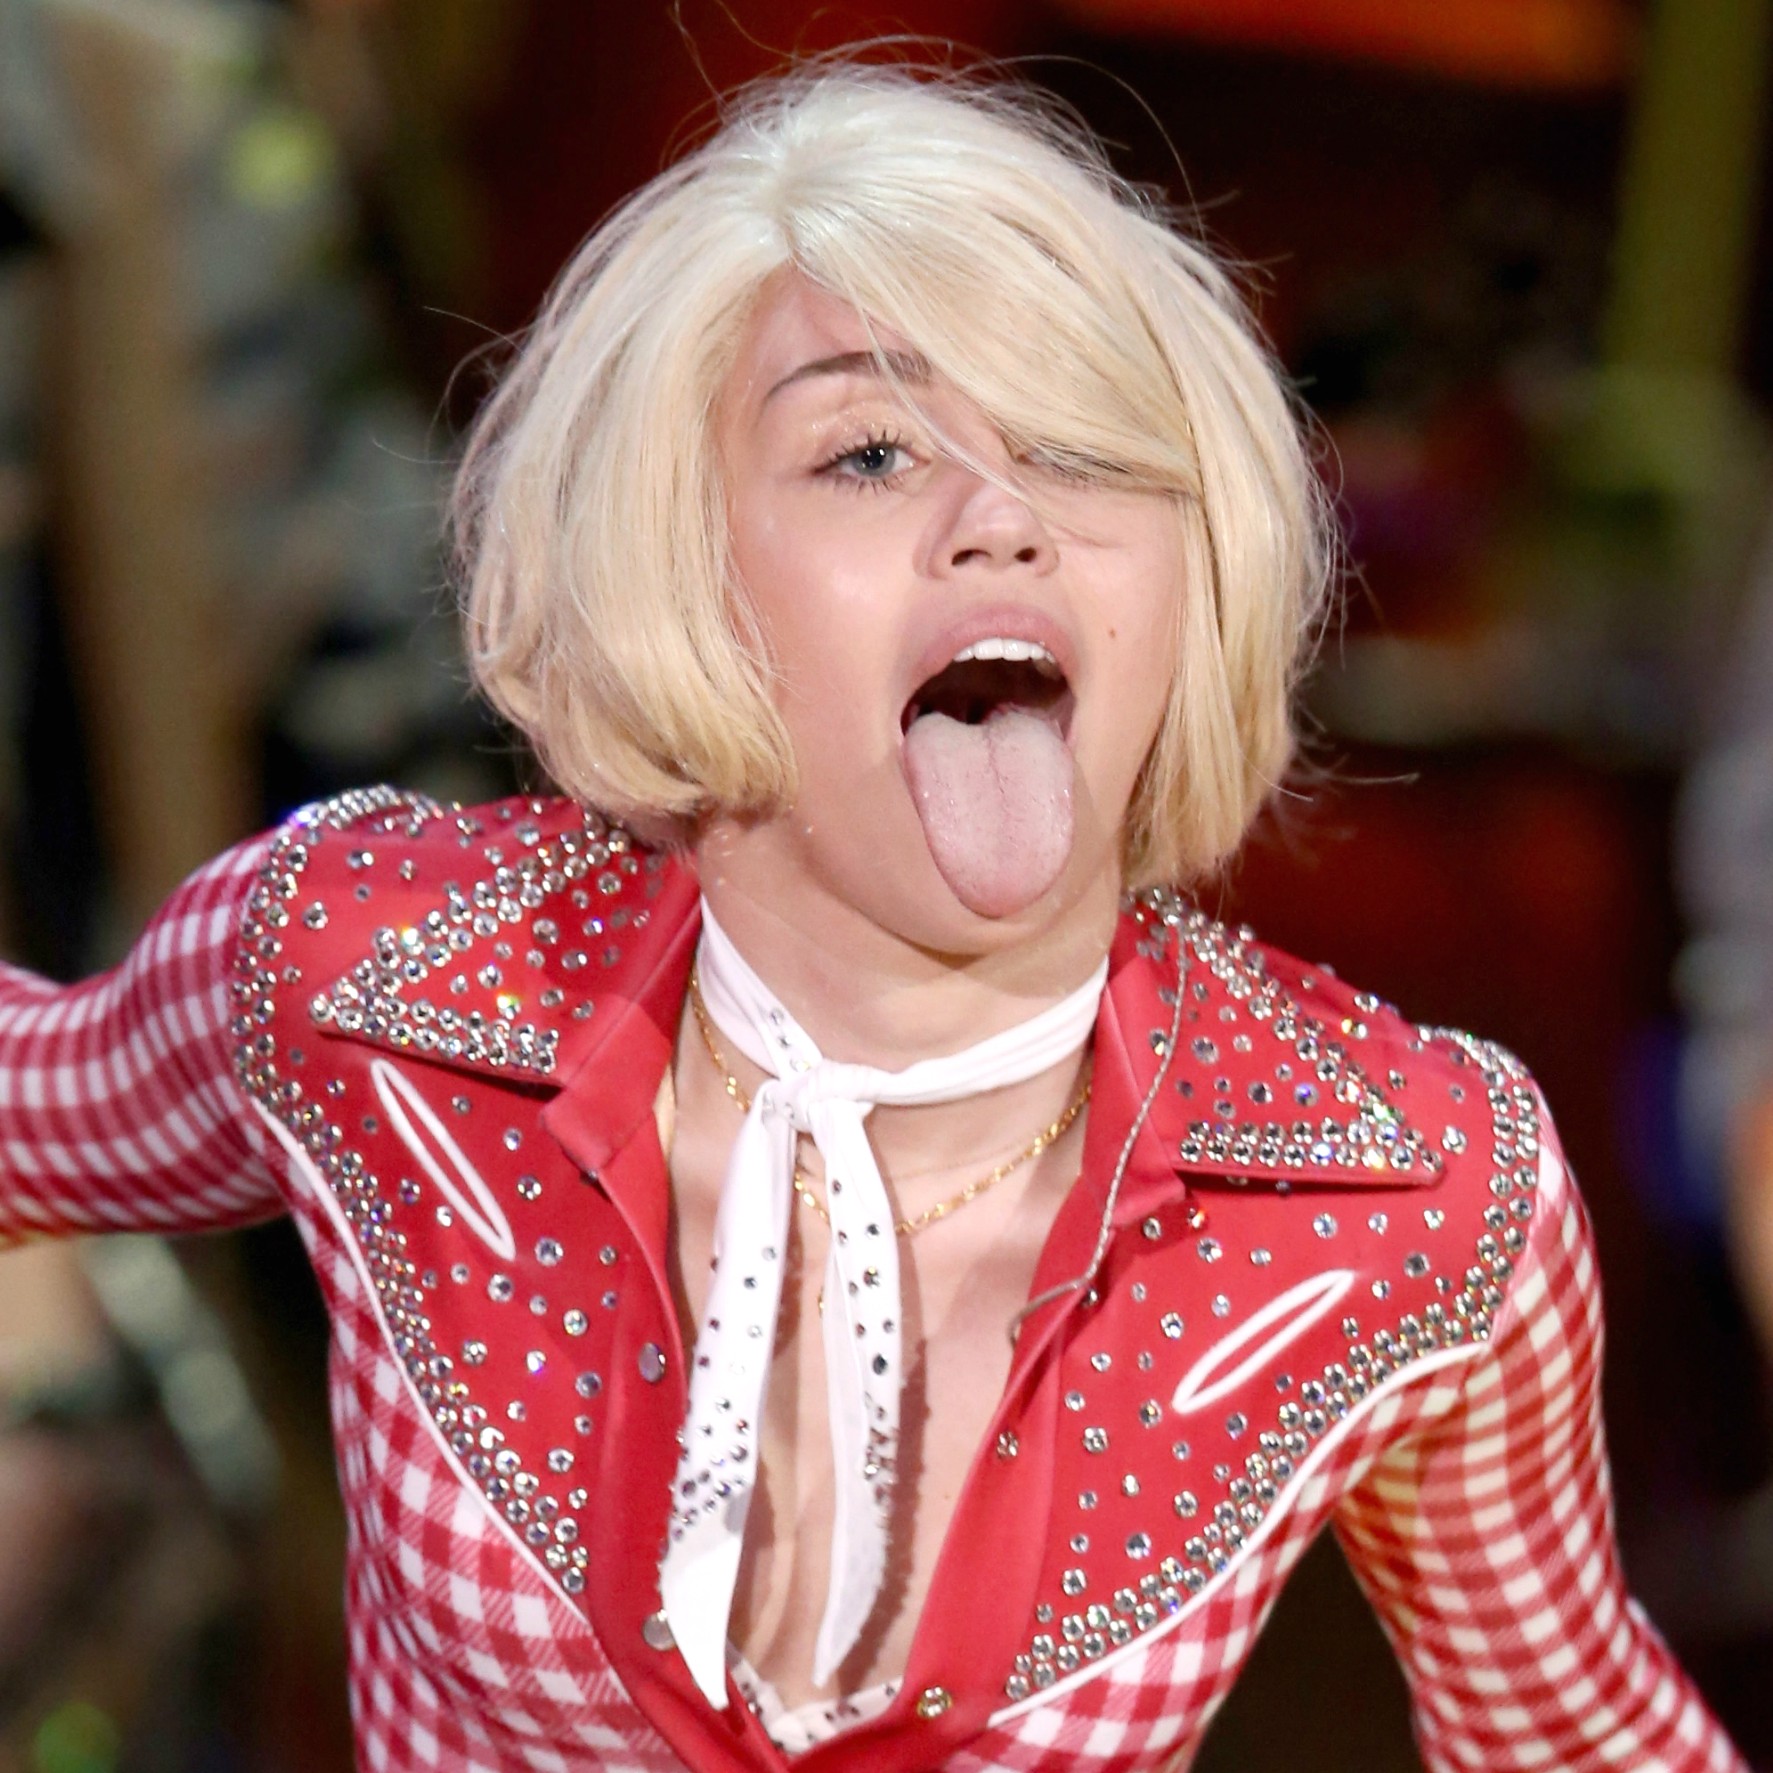 A cantora Miley Cyrus tem 21 anos e 150 milhões de dólares para chamar de seus. A quantia equivale a aproximadamente 337 milhões de reais. (Foto: Getty Images)